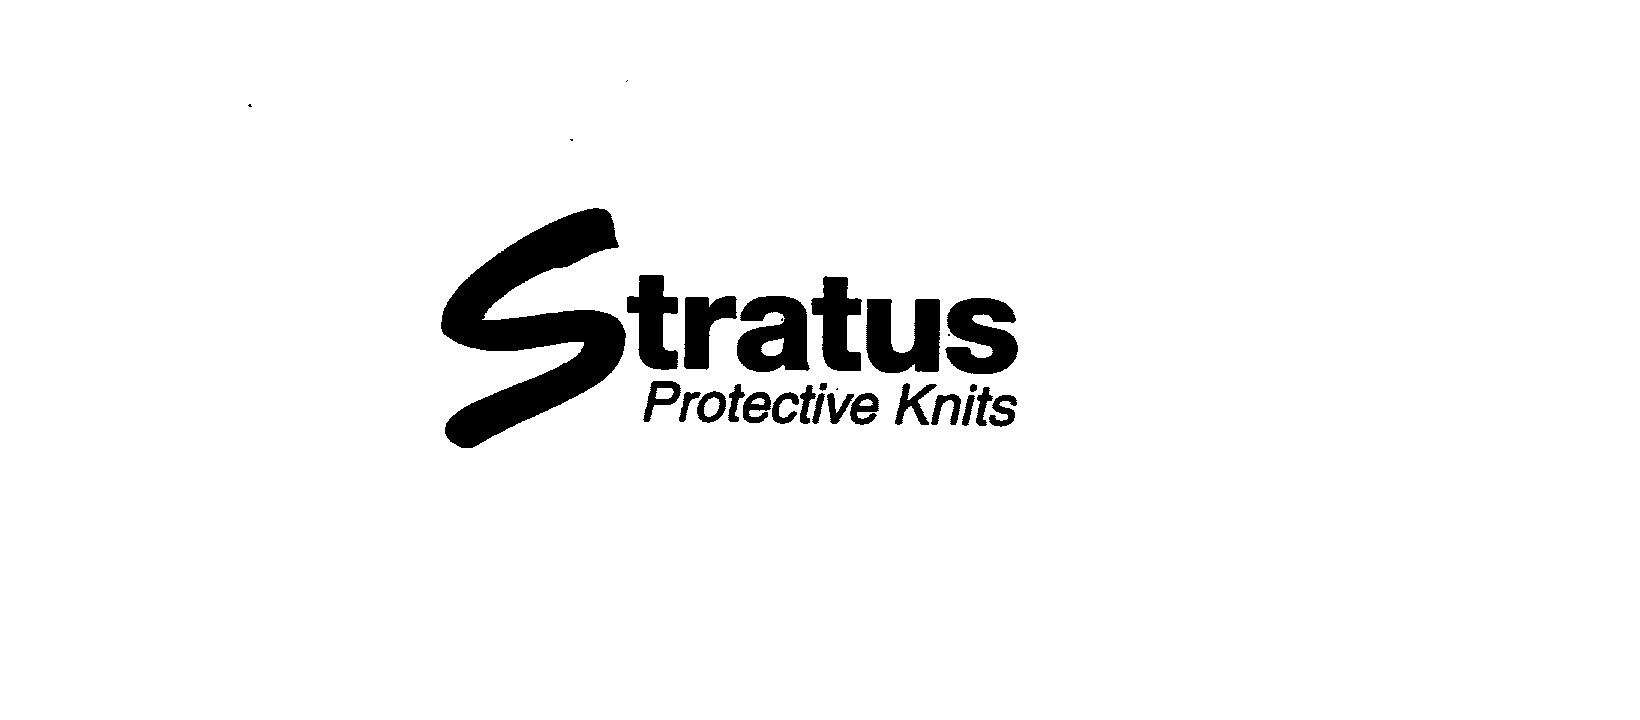  STRATUS PROTECTIVE KNITS